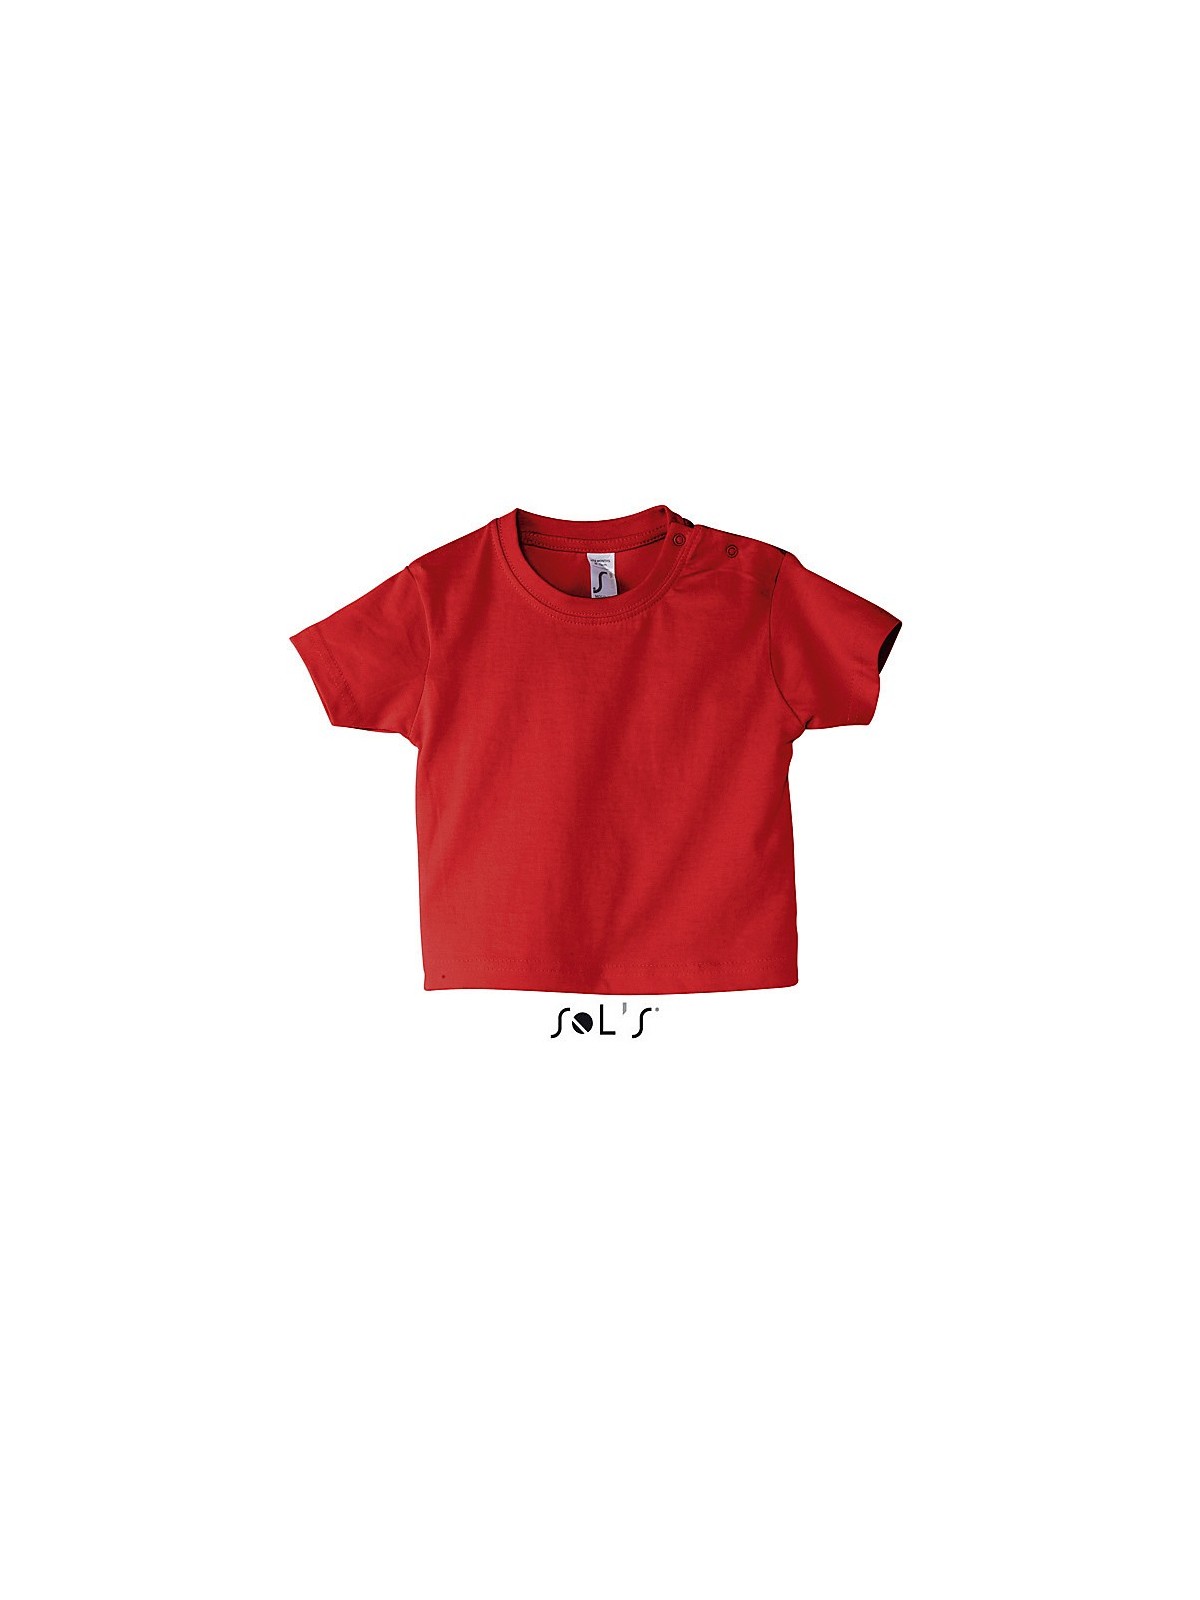 26-089 T-Shirt publicitaire bébé  personnalisé